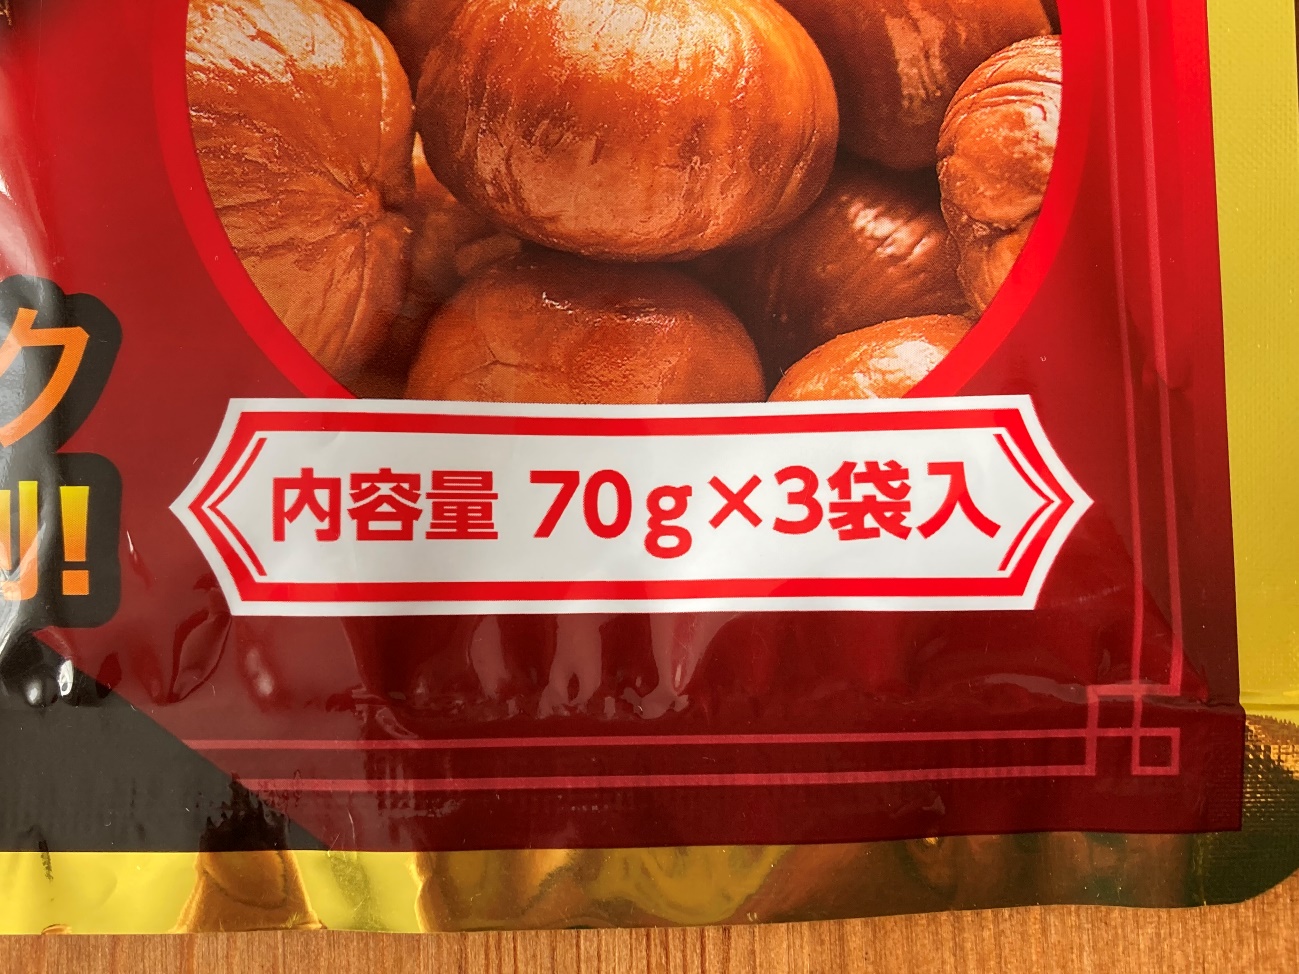 業務スーパーの有機天津甘栗3pの内容量70g✕3袋入の表記